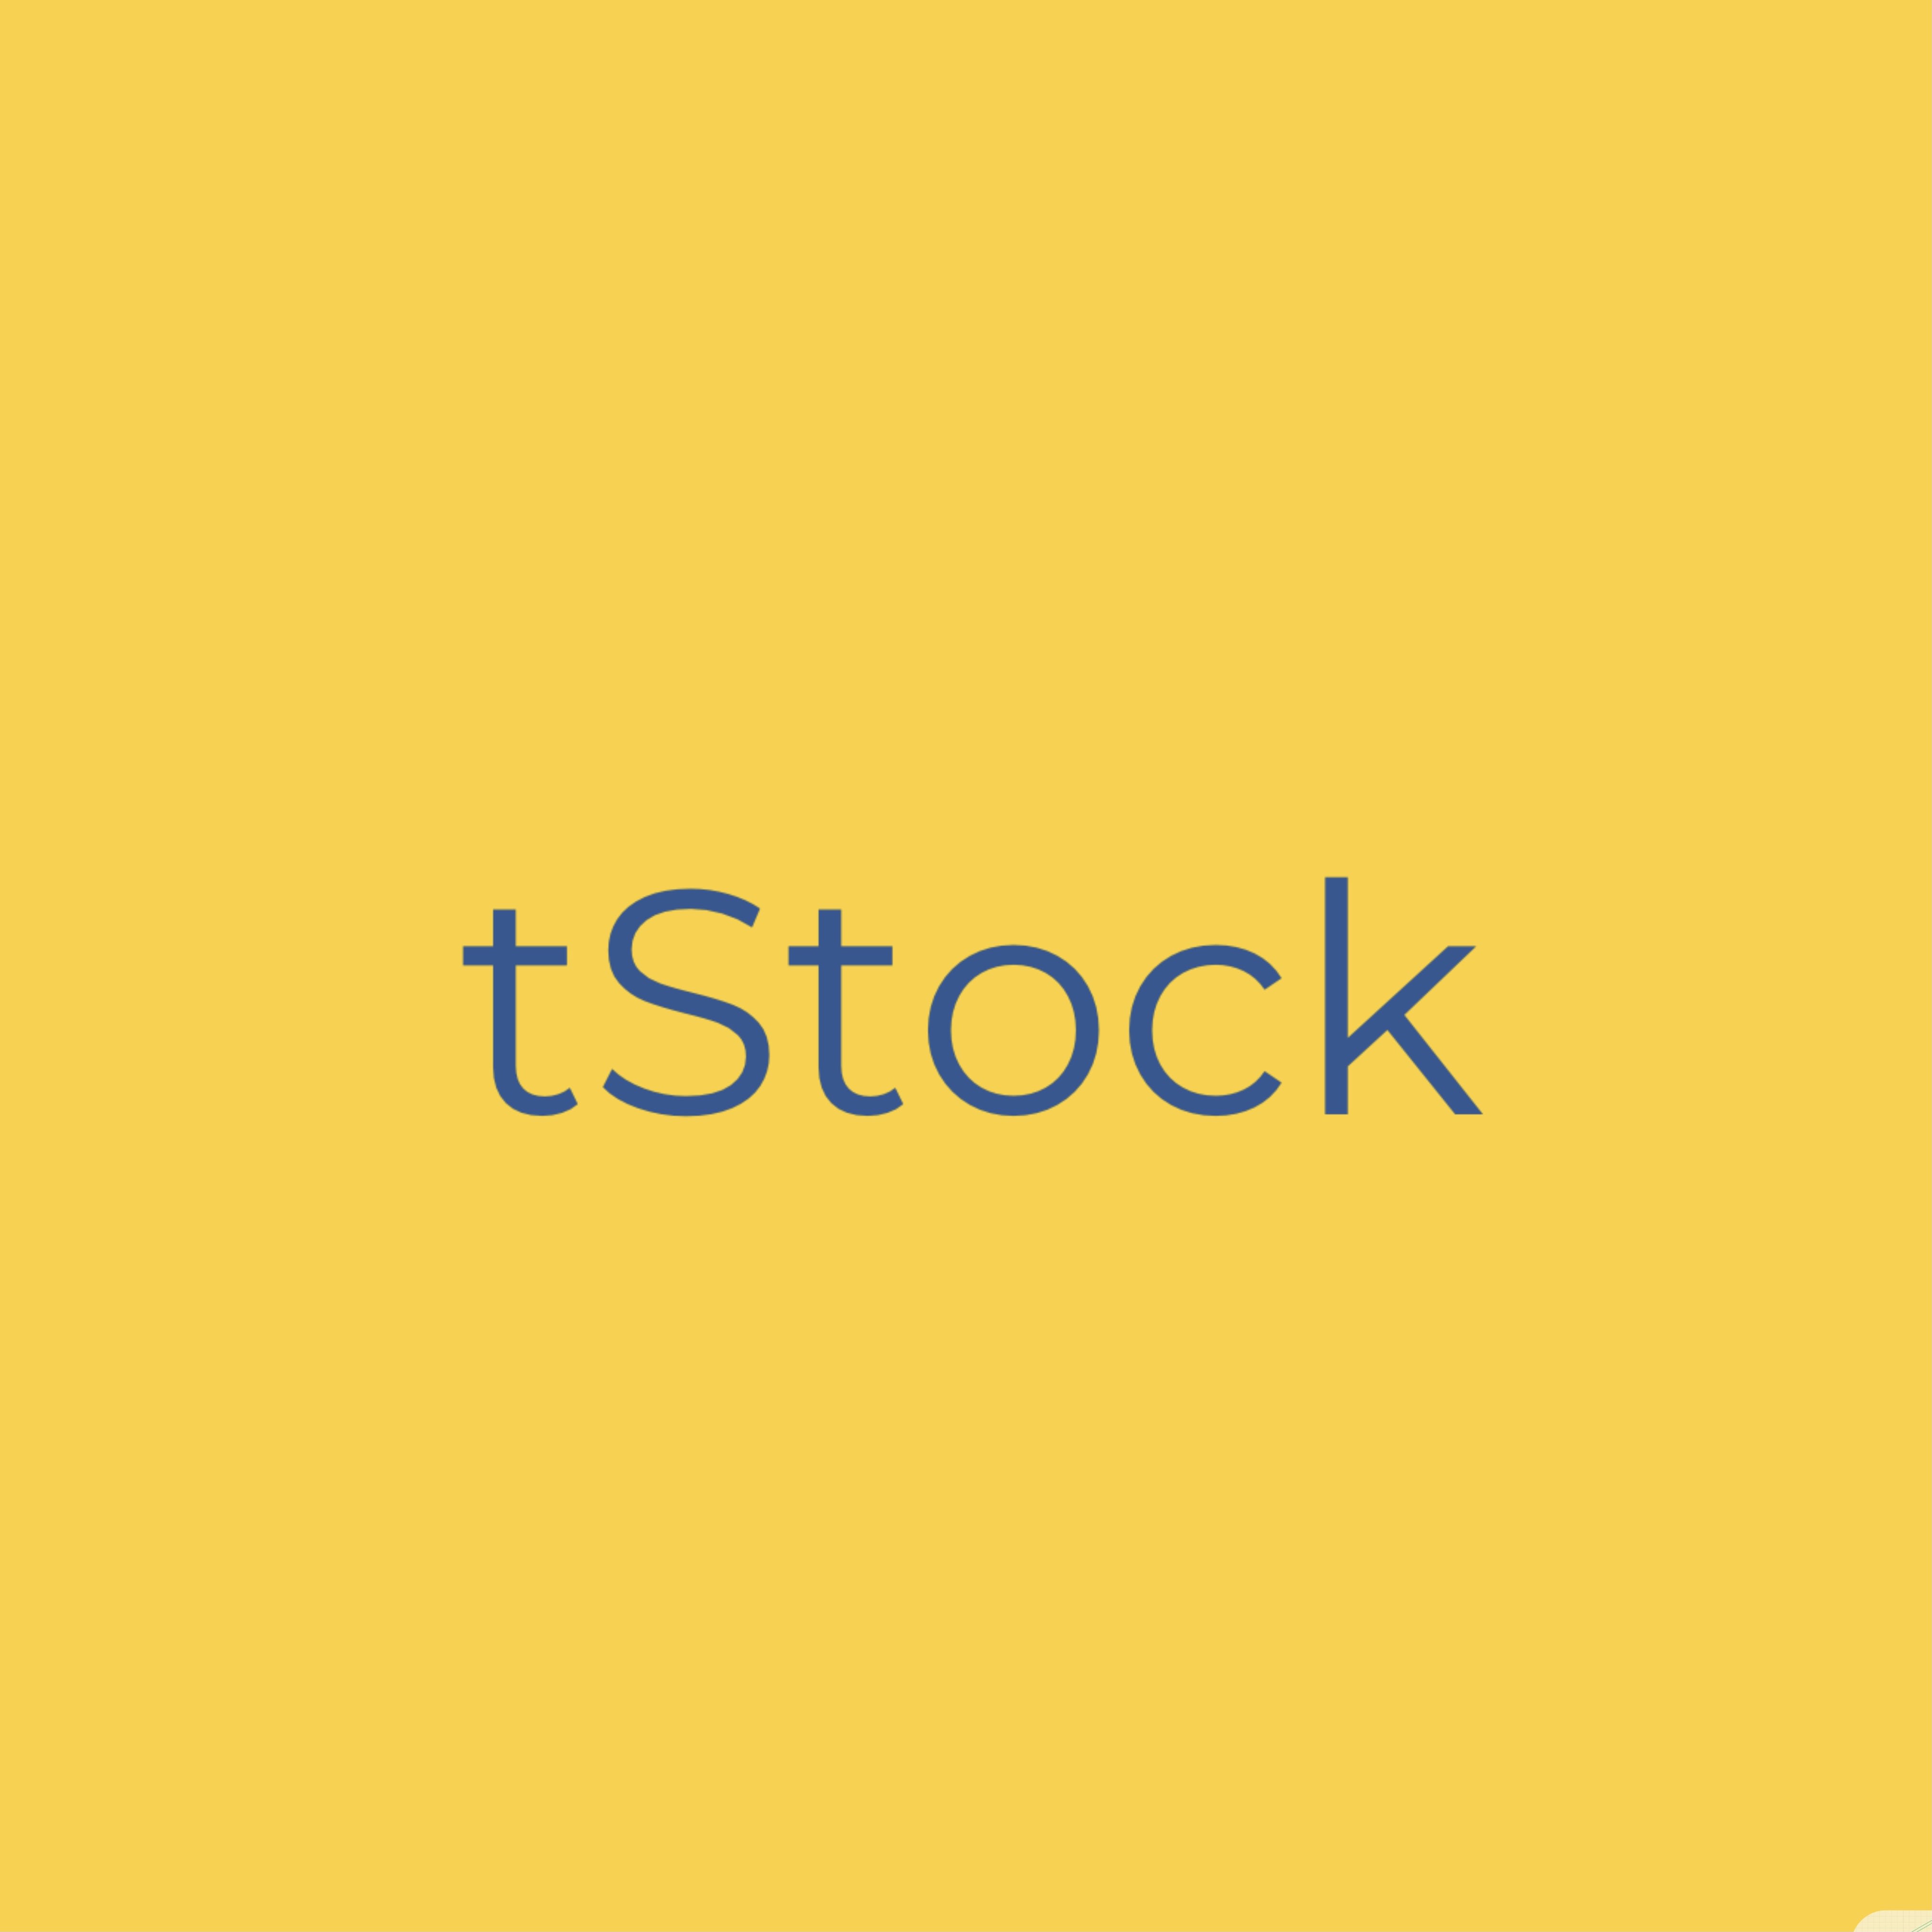 T Stock